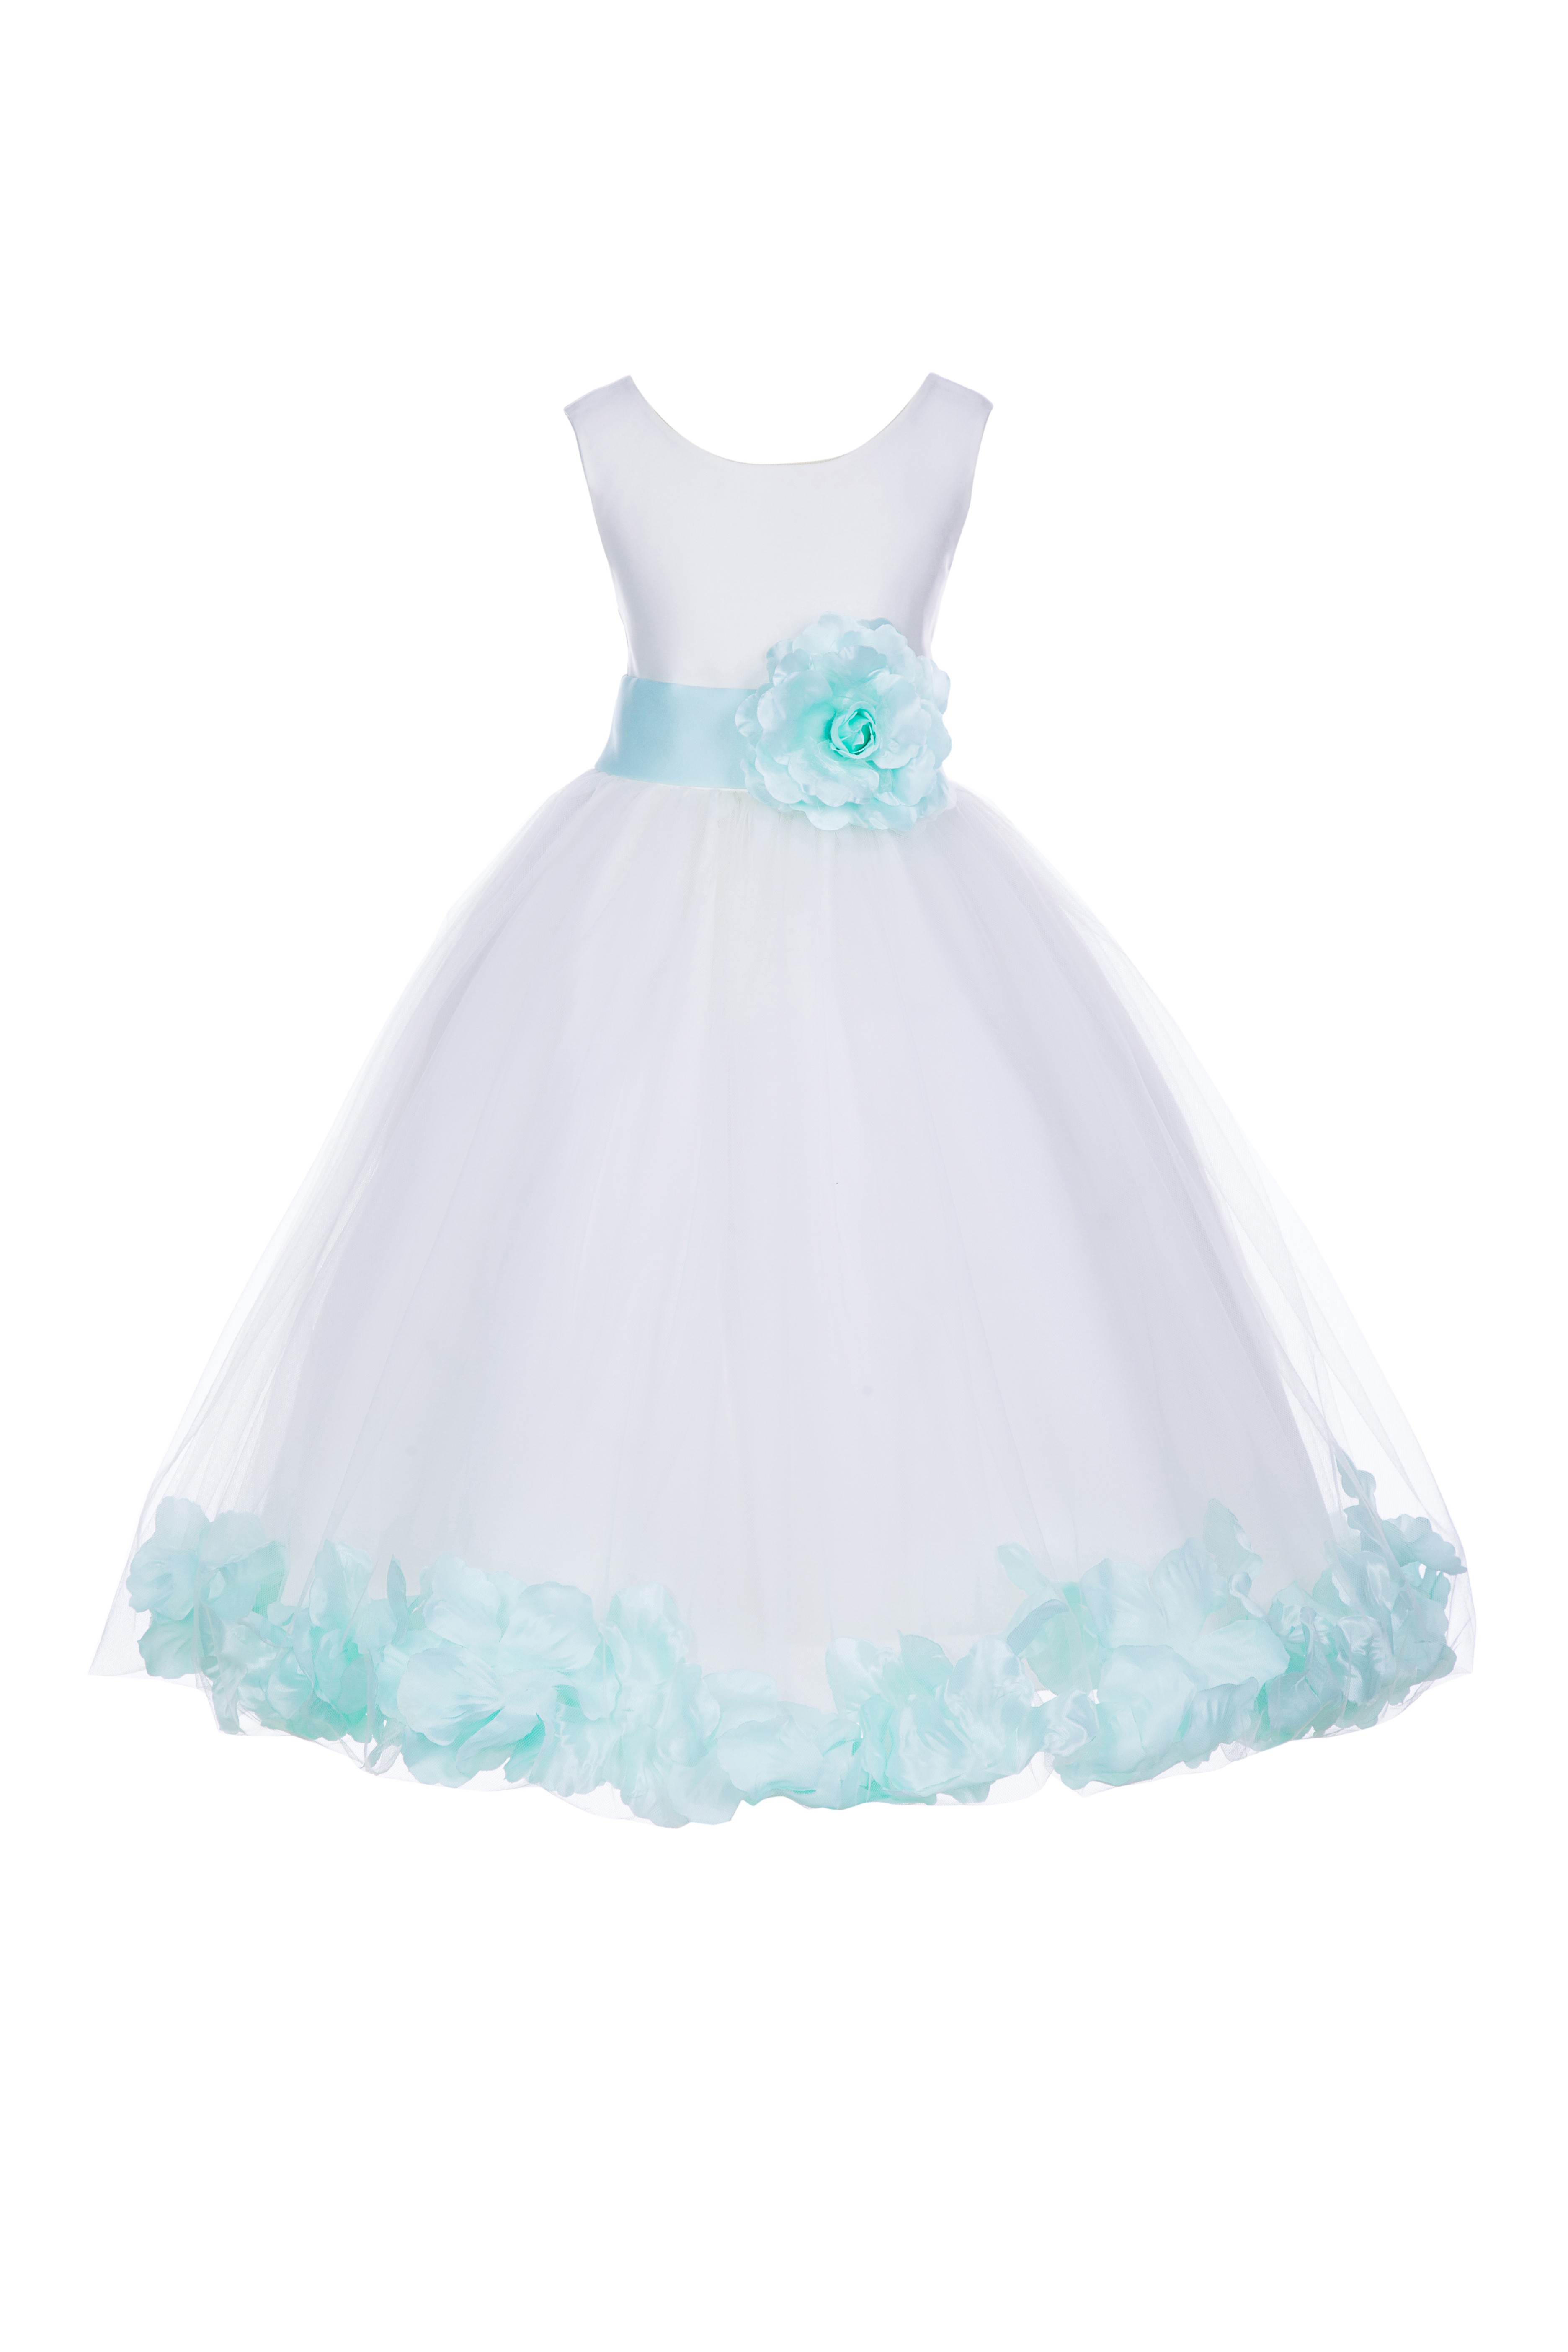 White/Mint Tulle Rose Petals Flower Girl Dress Wedding 302T